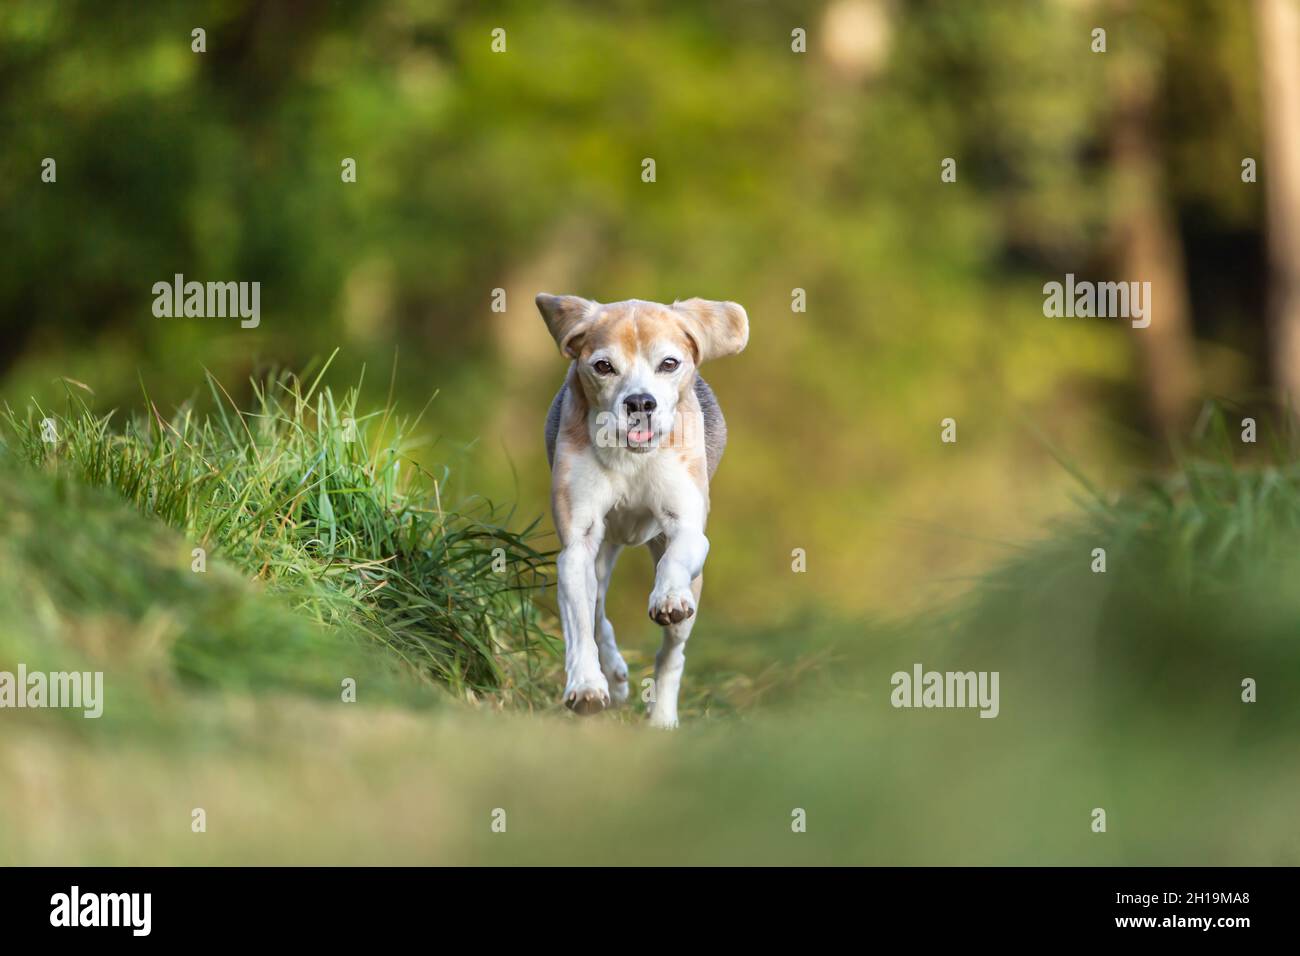 Portrait of a beagle gun dog running across a field outdoors Stock Photo